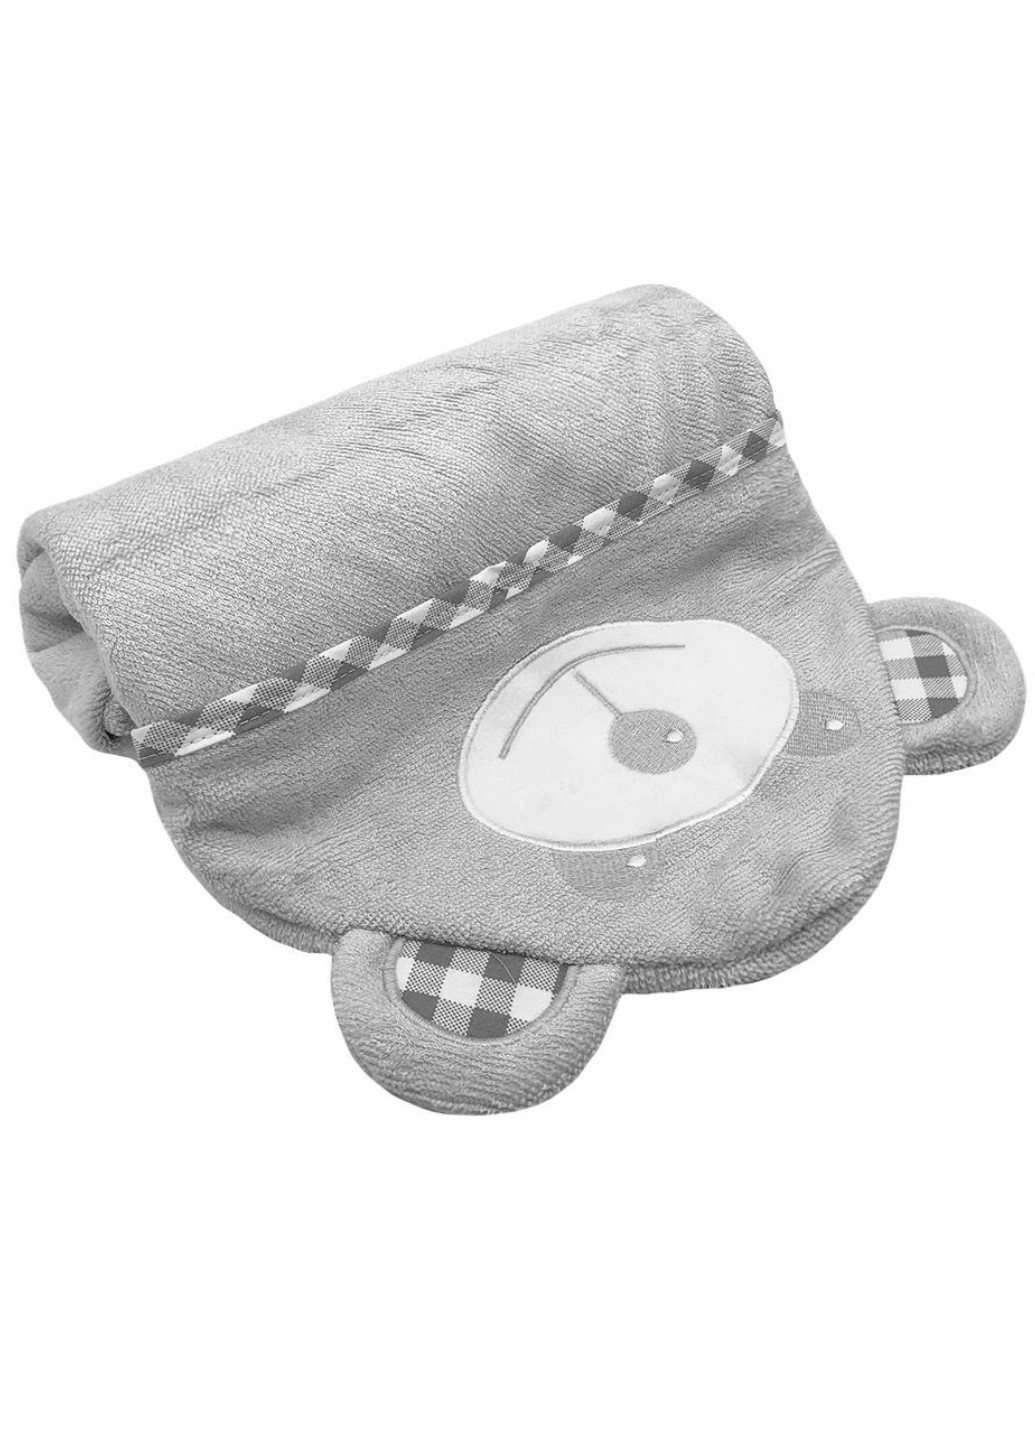 Lovely Svi детское полотенце с капюшоном - полотенце уголок - серый мишка серый производство - Китай